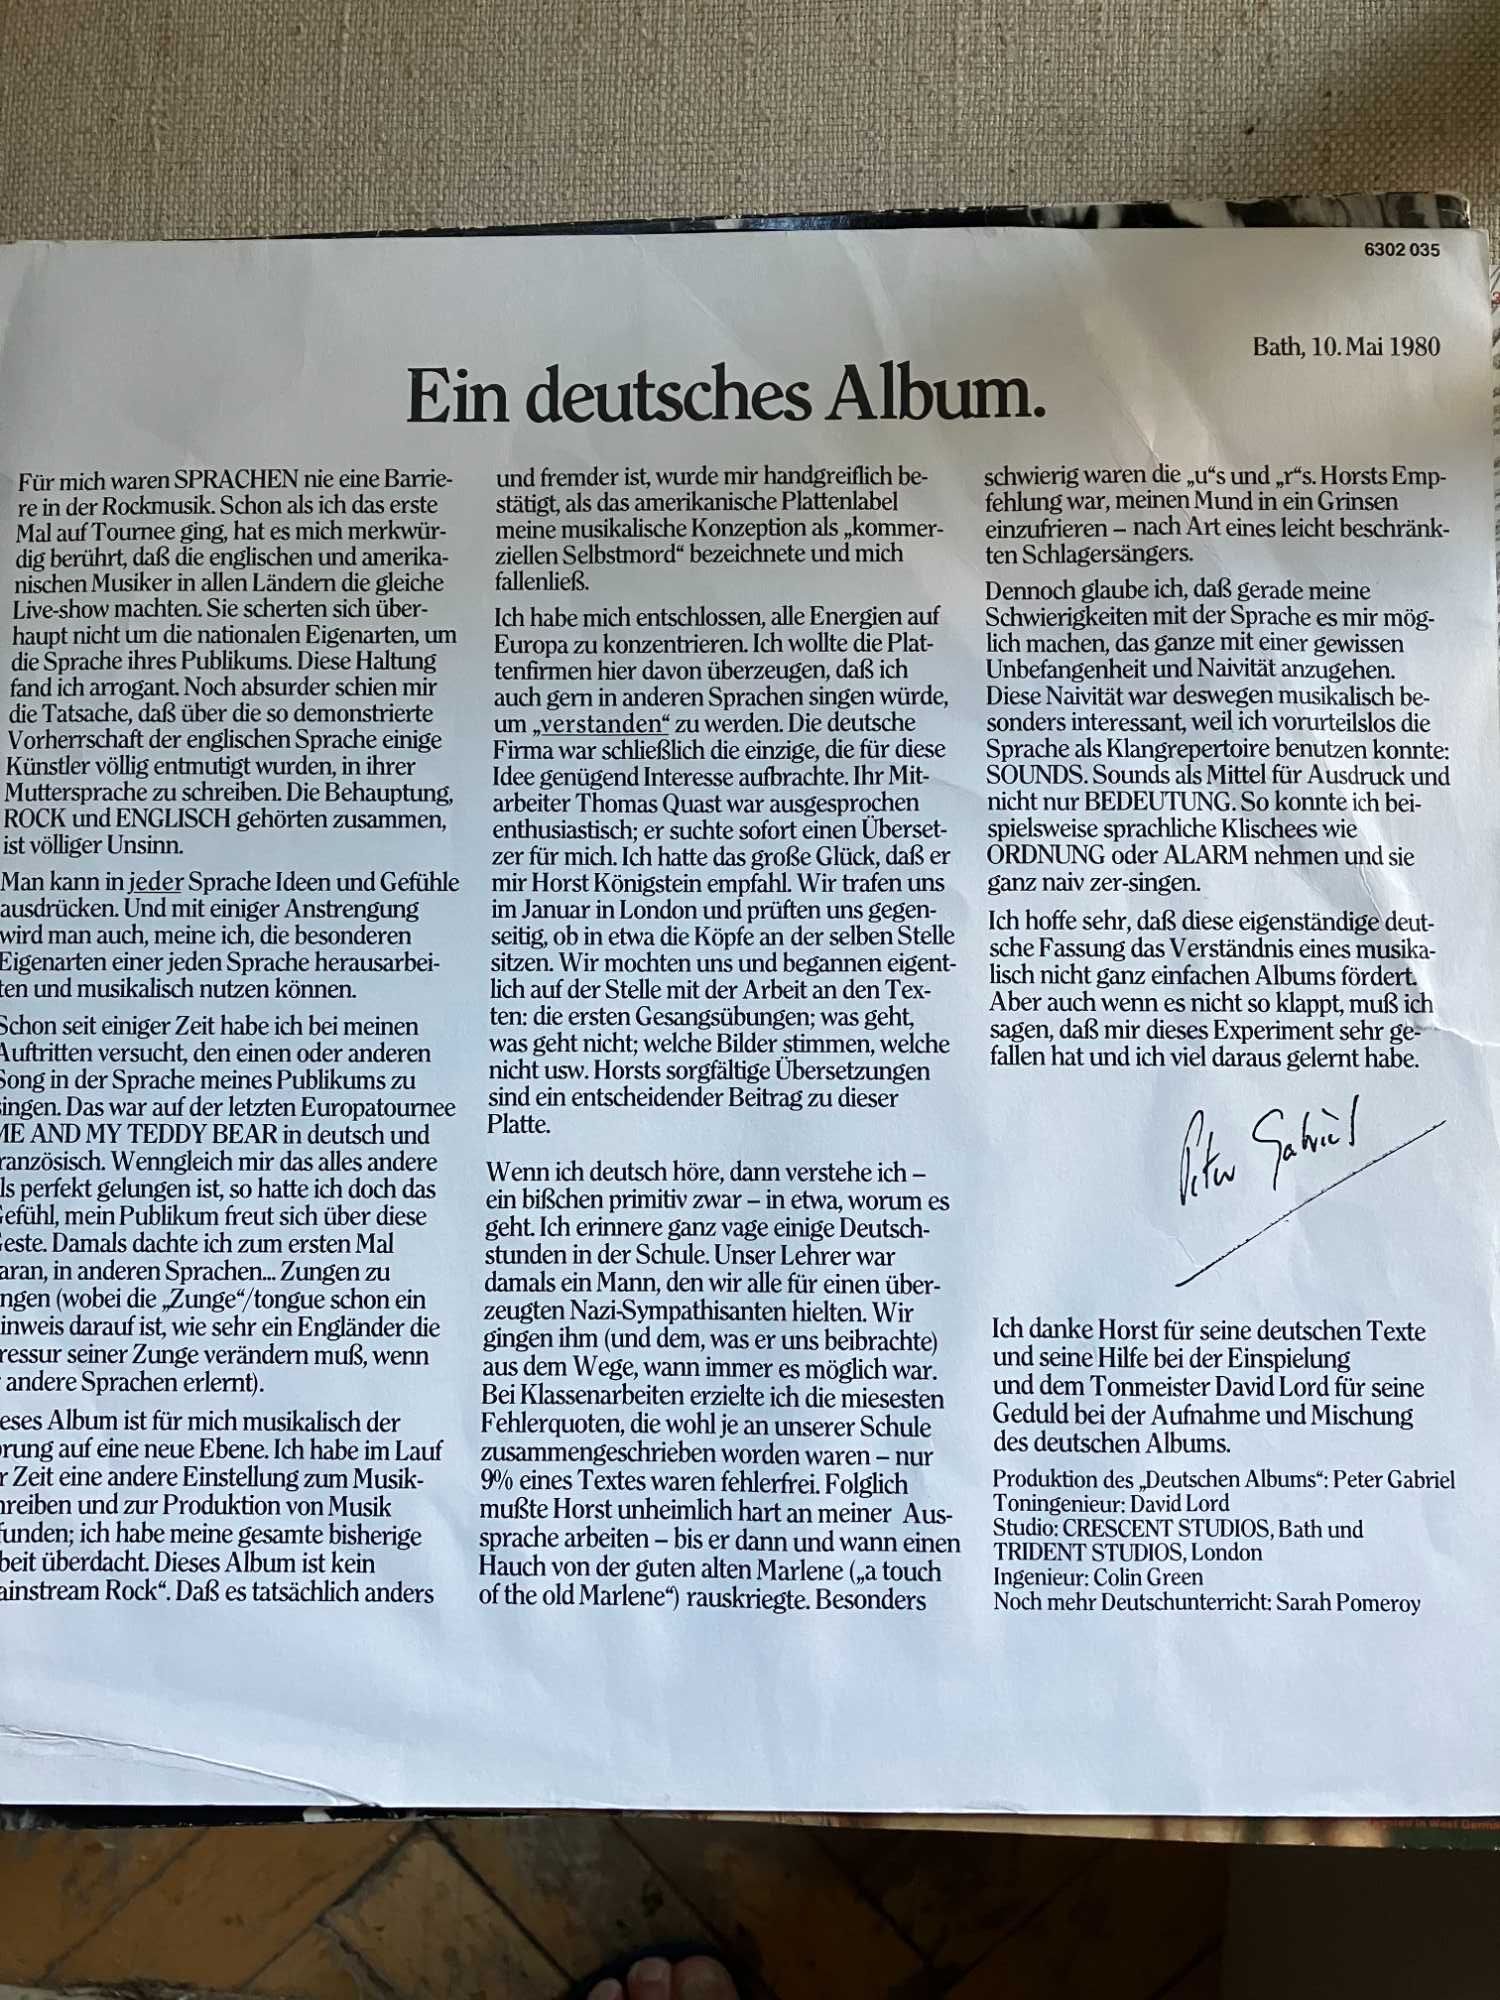 winyl  Peter Gabriel " ein  deutsches album "  very good